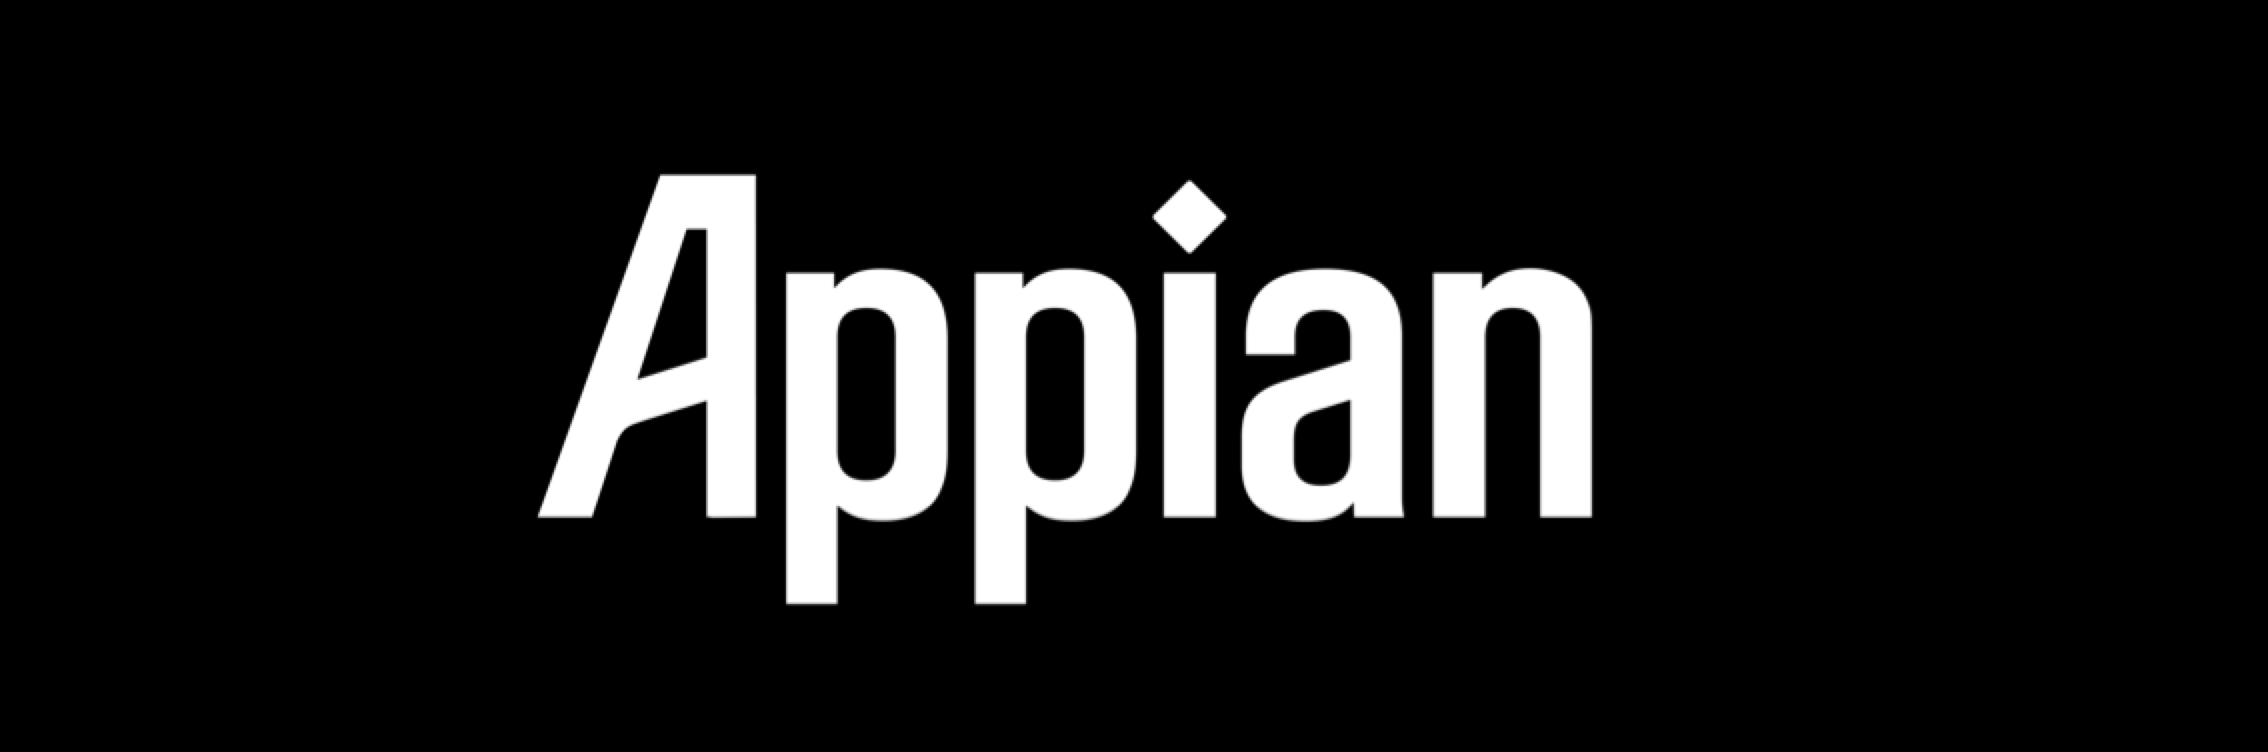 Appian Logo - appian banner - Appian Blog